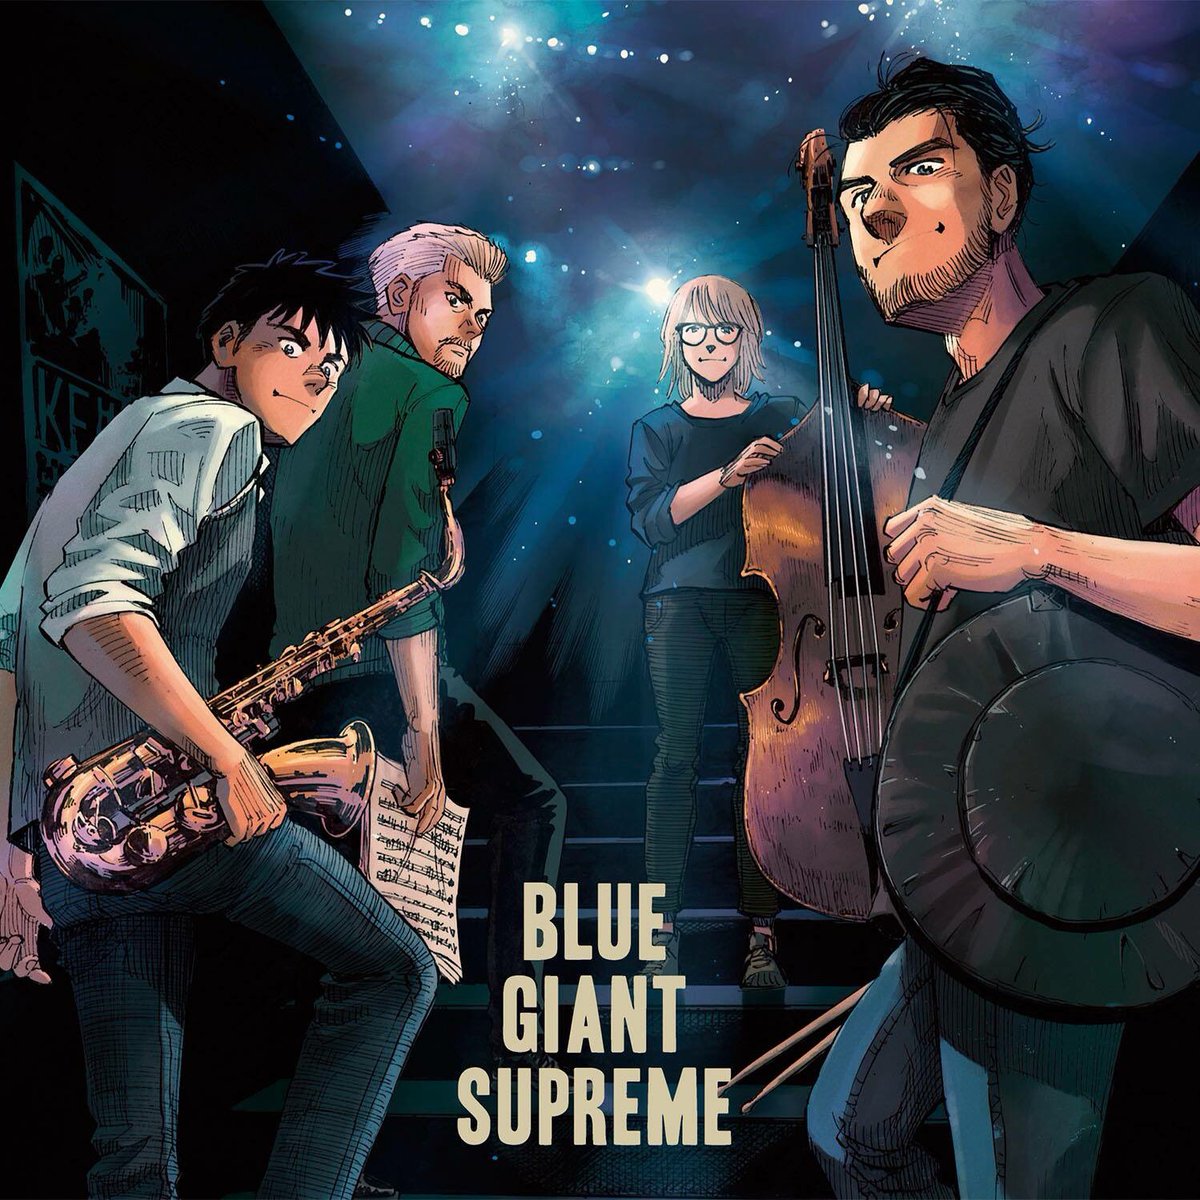 漫画 Blue Giant Supreme のコミック新刊 新コンピが発売 ダイジェスト映像も Arban